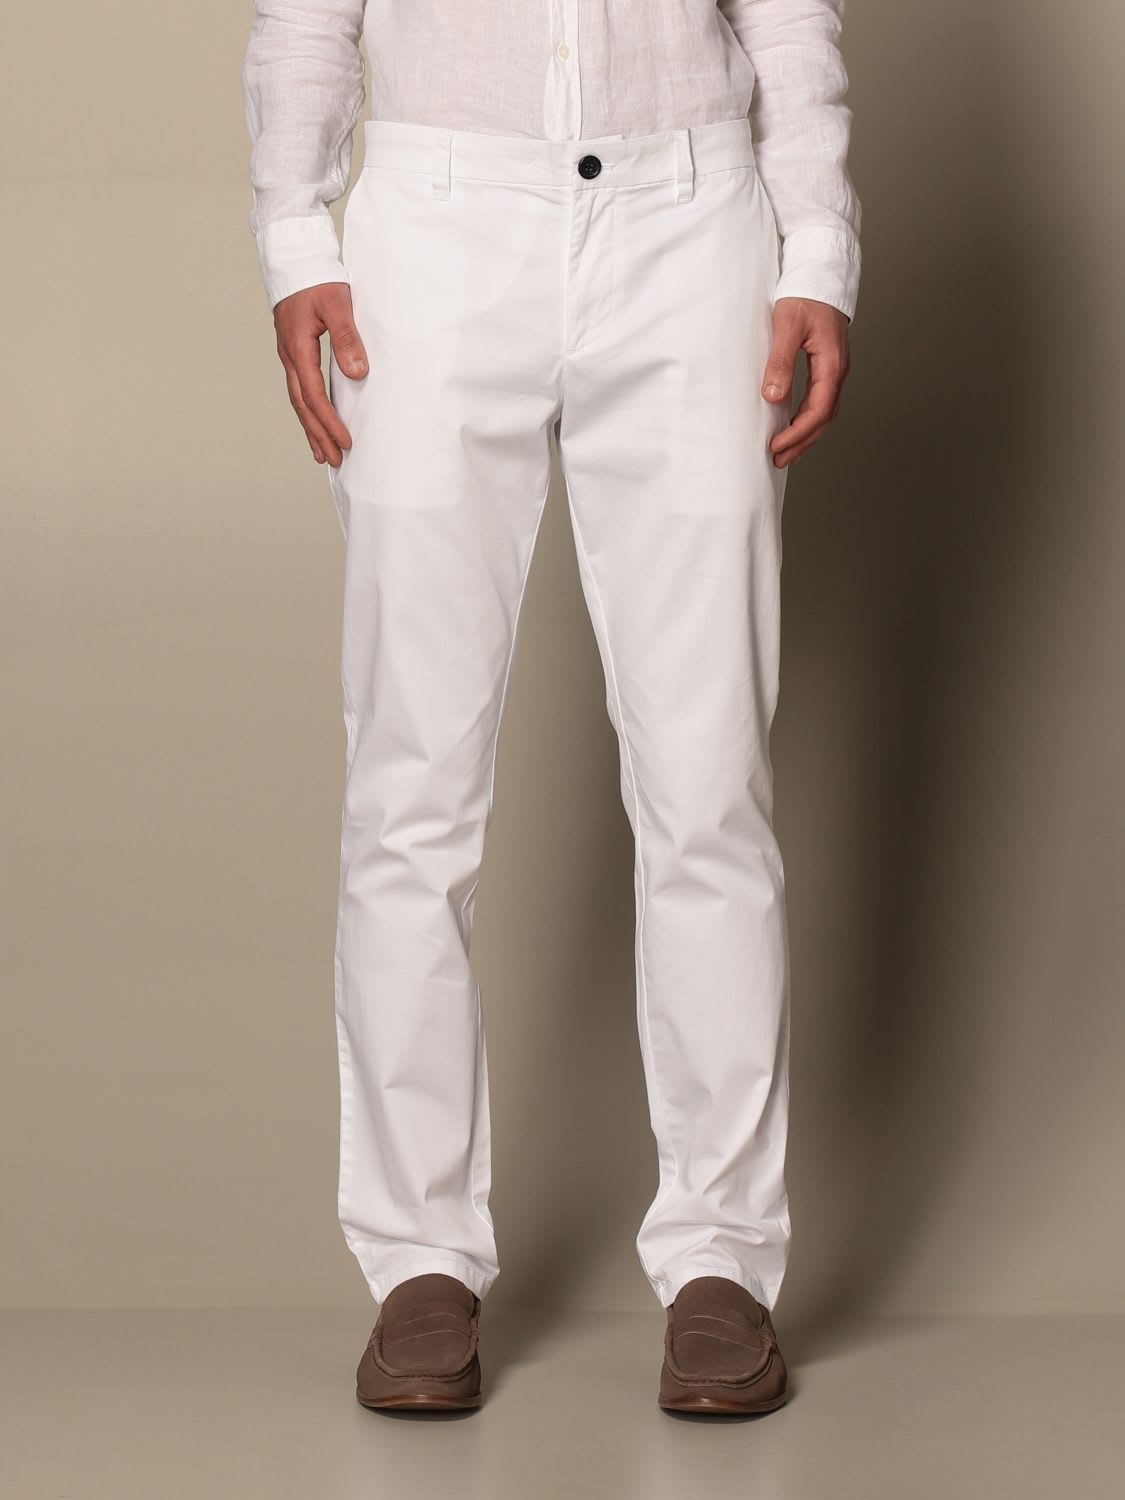 Armani Collezioni Armani Exchange Trousers Armani Exchange Chino Trousers In Stretch Cotton In White